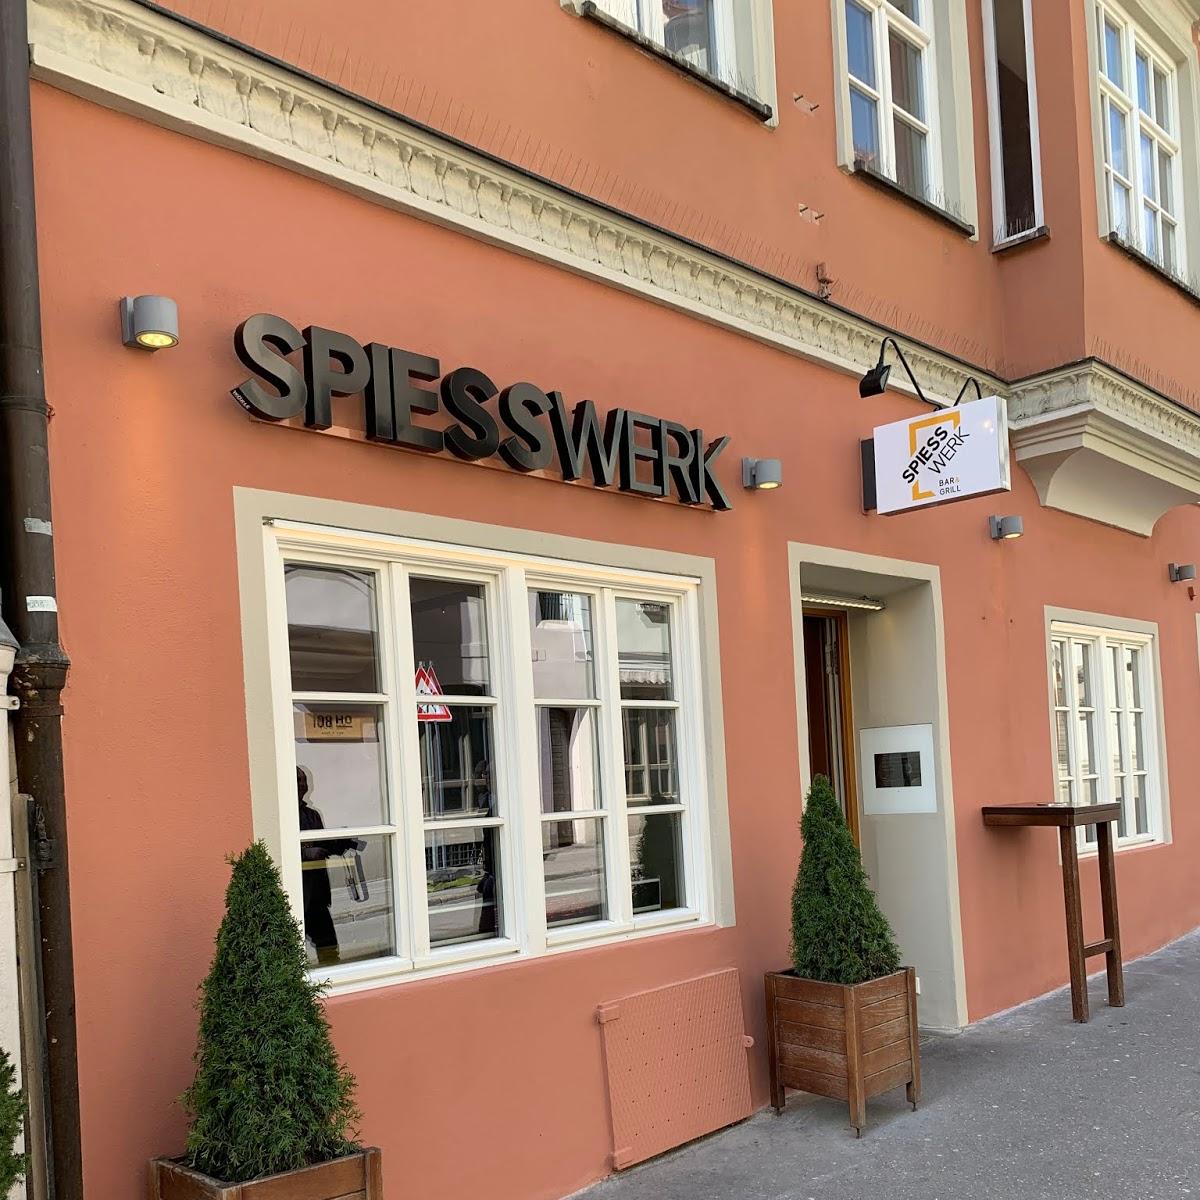 Restaurant "Spiesswerk" in  Augsburg